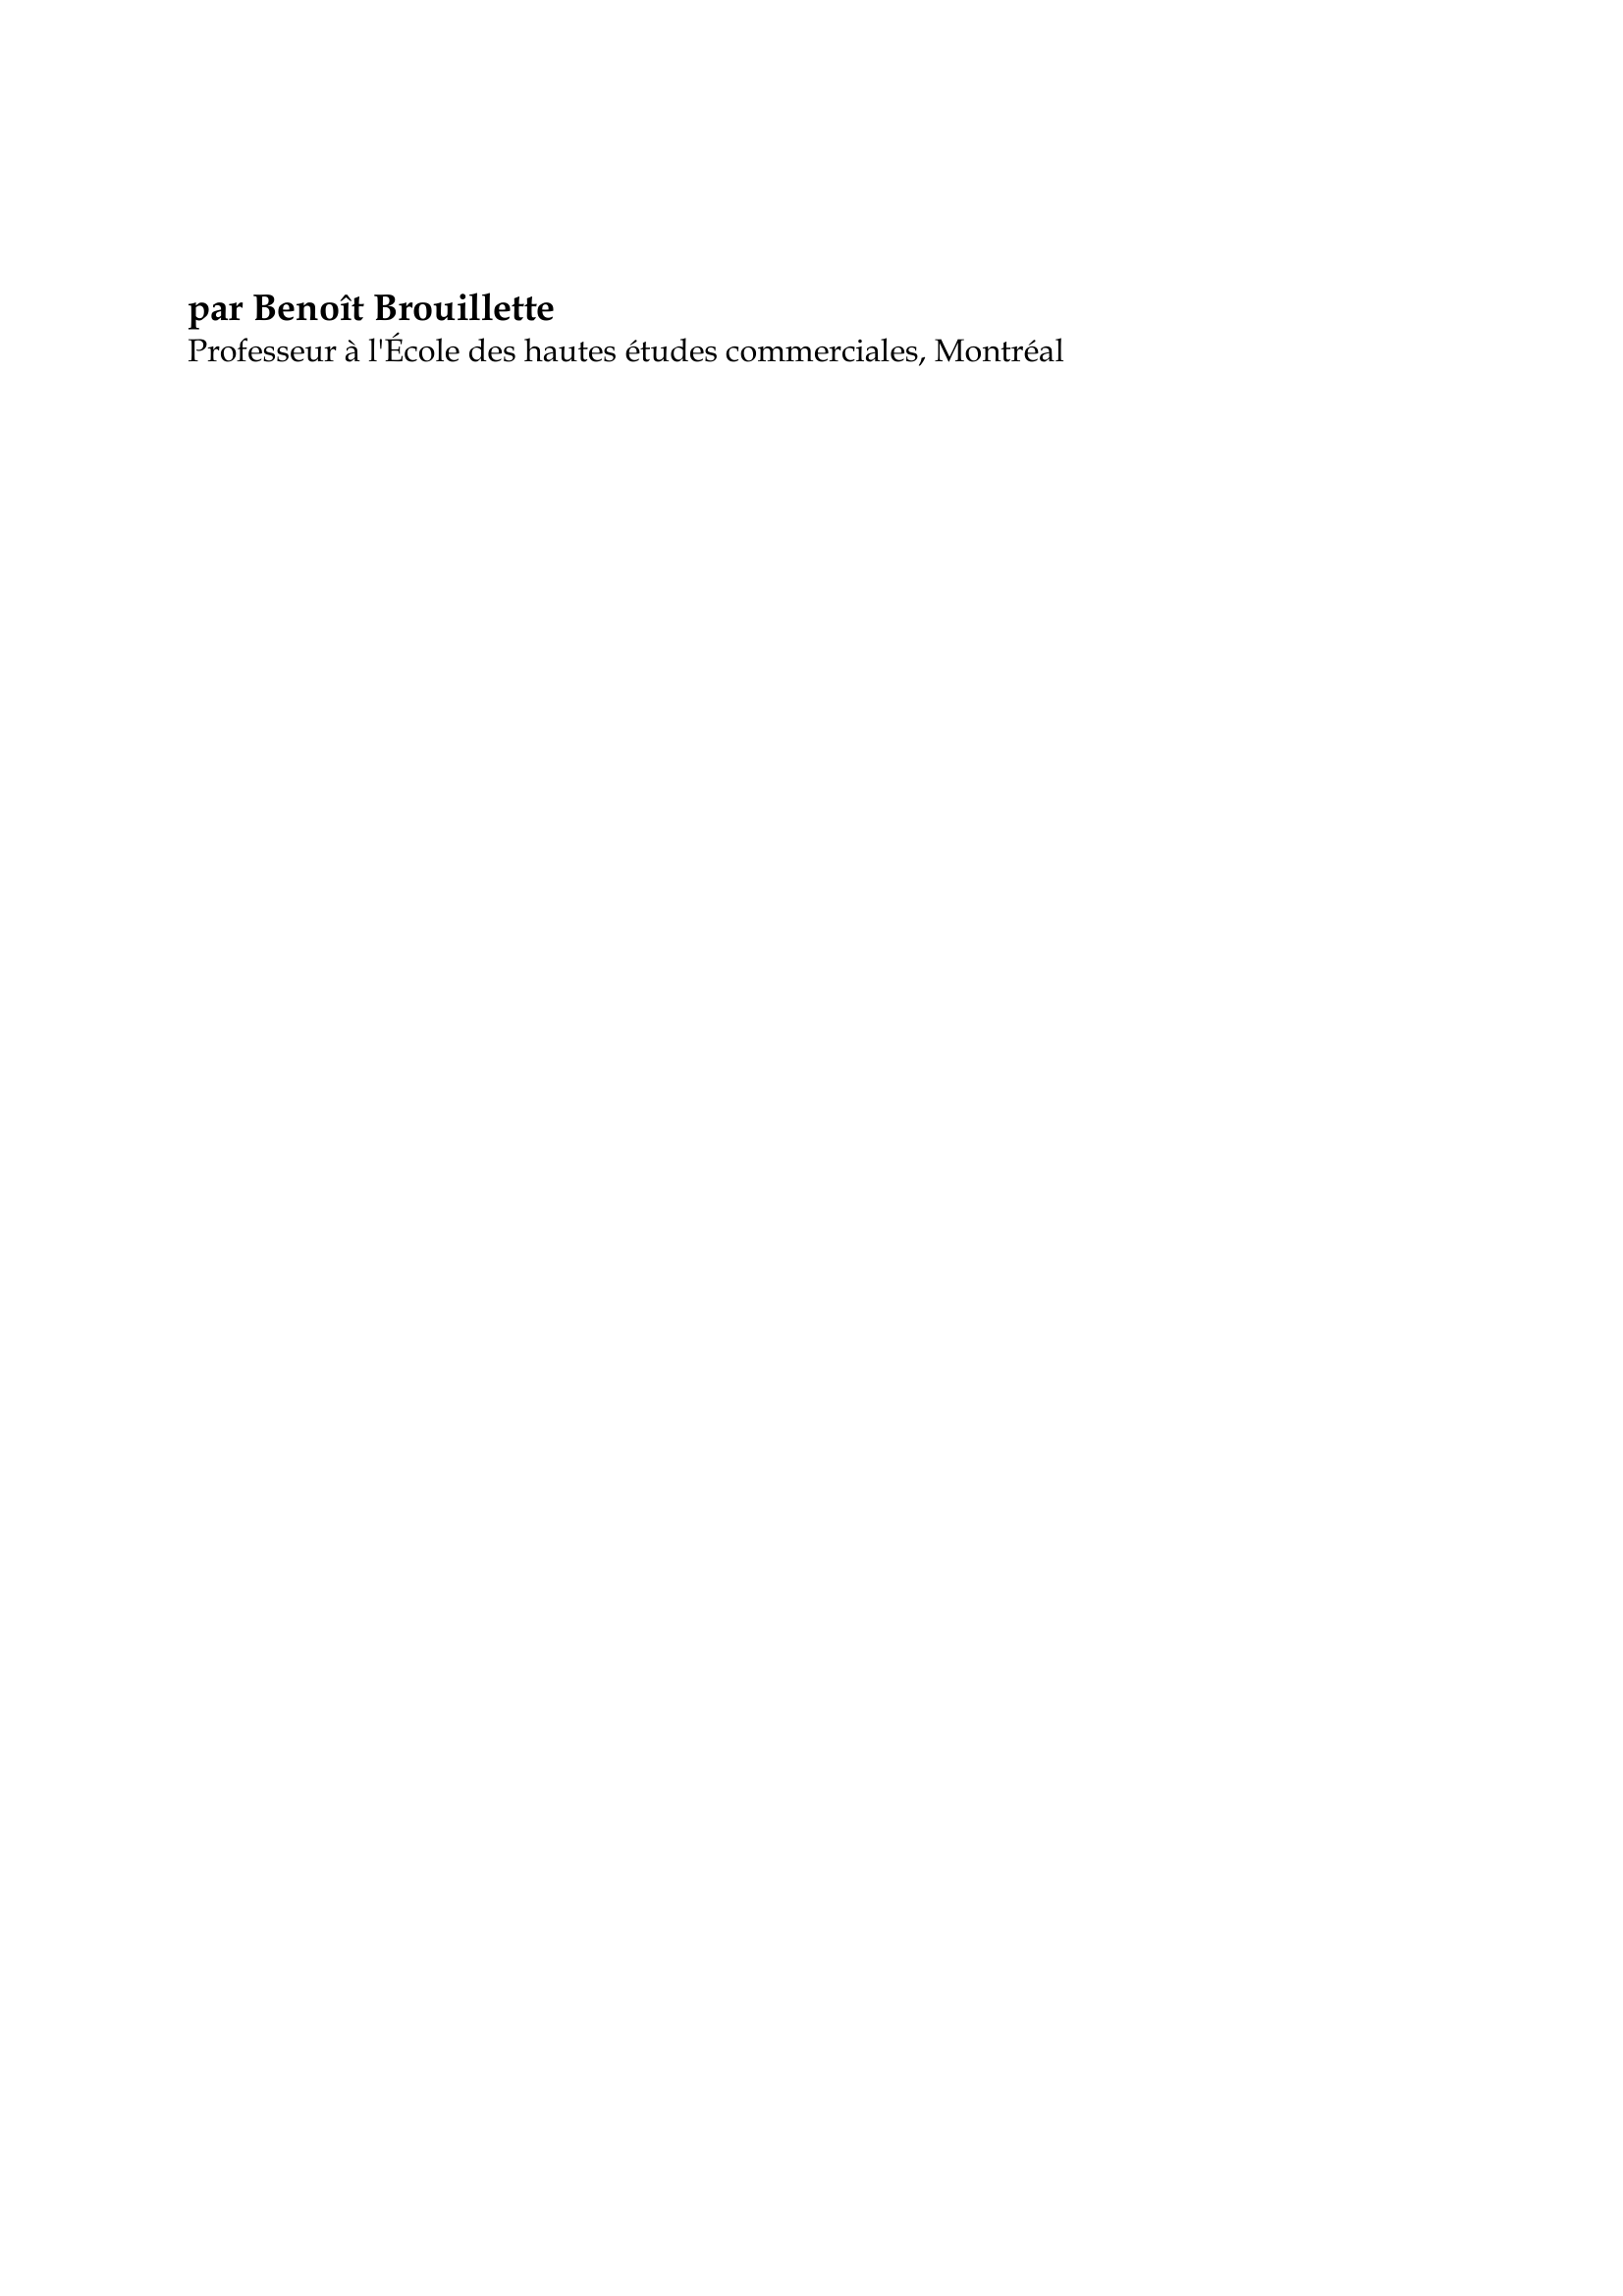 Prévisualisation du document Samuel Champlain

par Benoît Brouillette
Professeur à l'École des hautes études commerciales, Montréal

Champlain naquit à Brouage (Charente) durant la seconde moitié du XVIe
siècle, vers 1567.